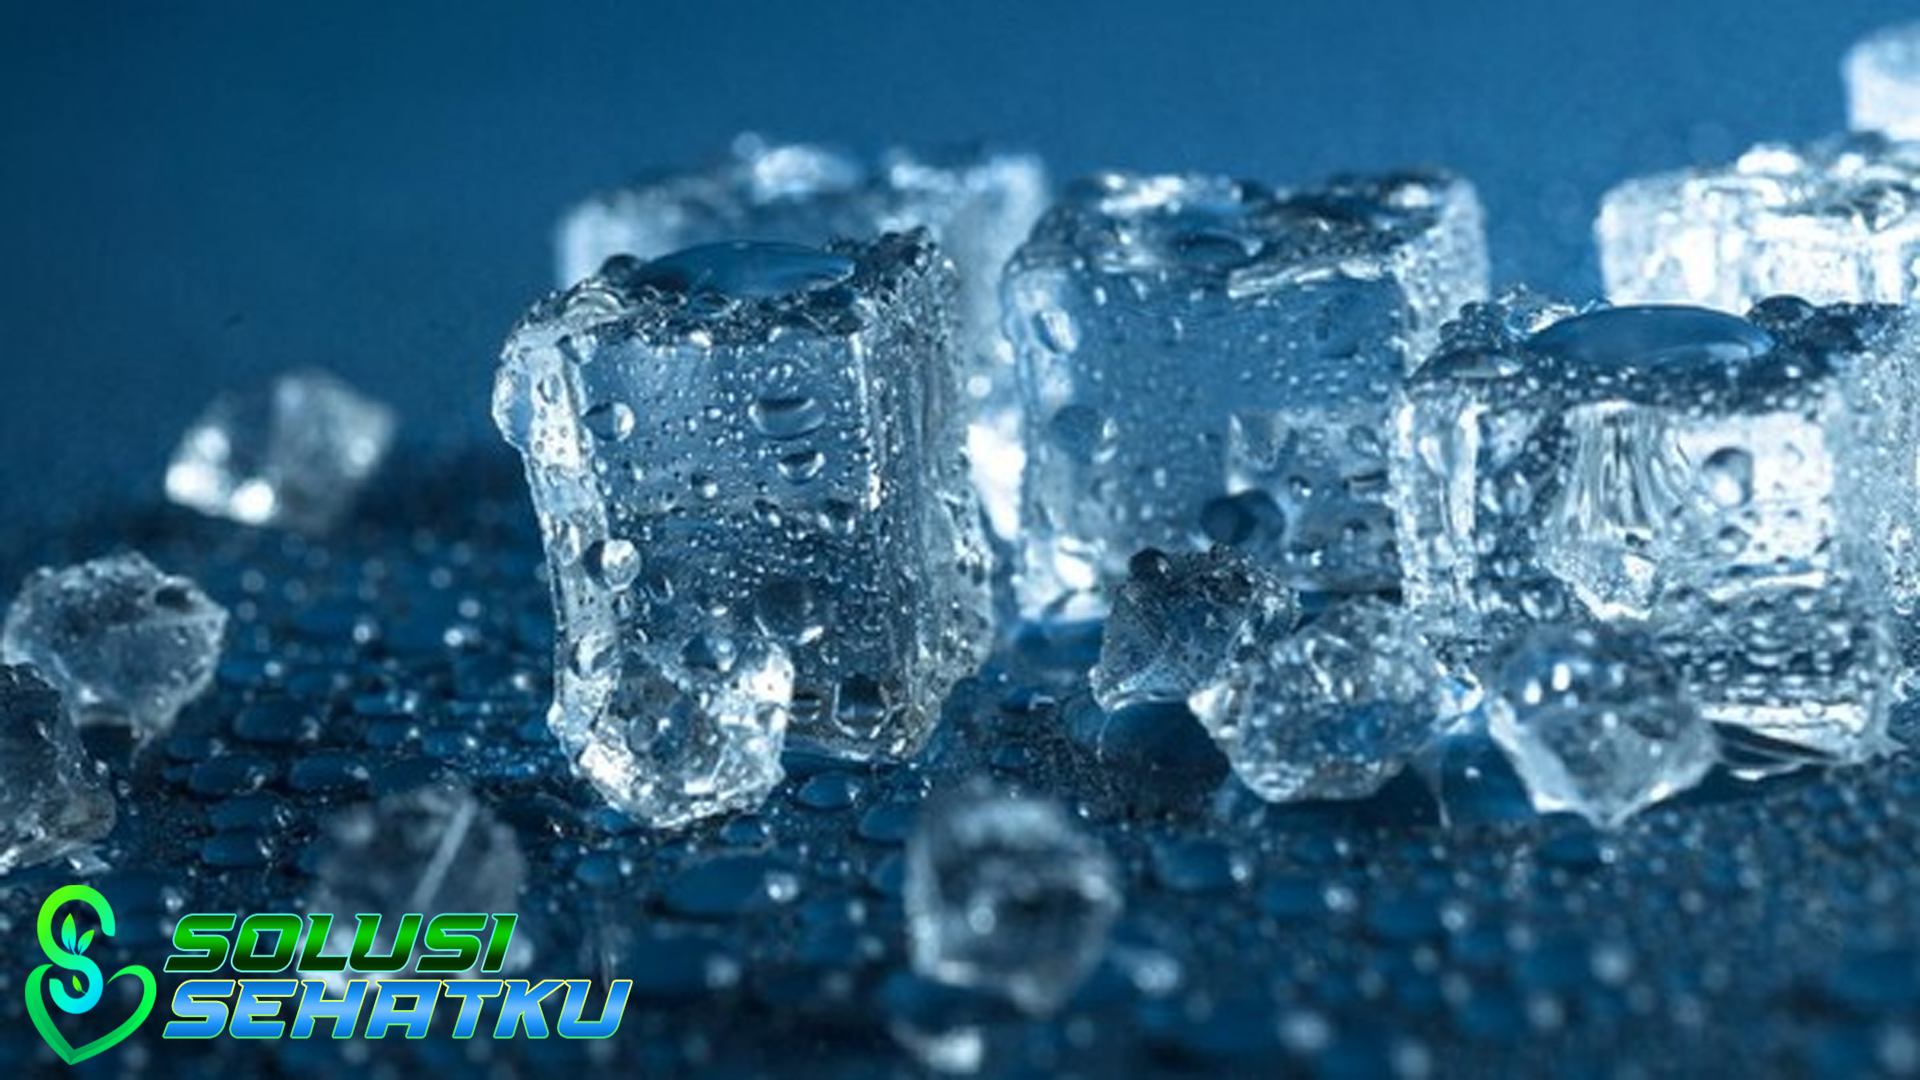 Manfaat Air Es bagi Kesehatan Dan Juga Menyegarkan